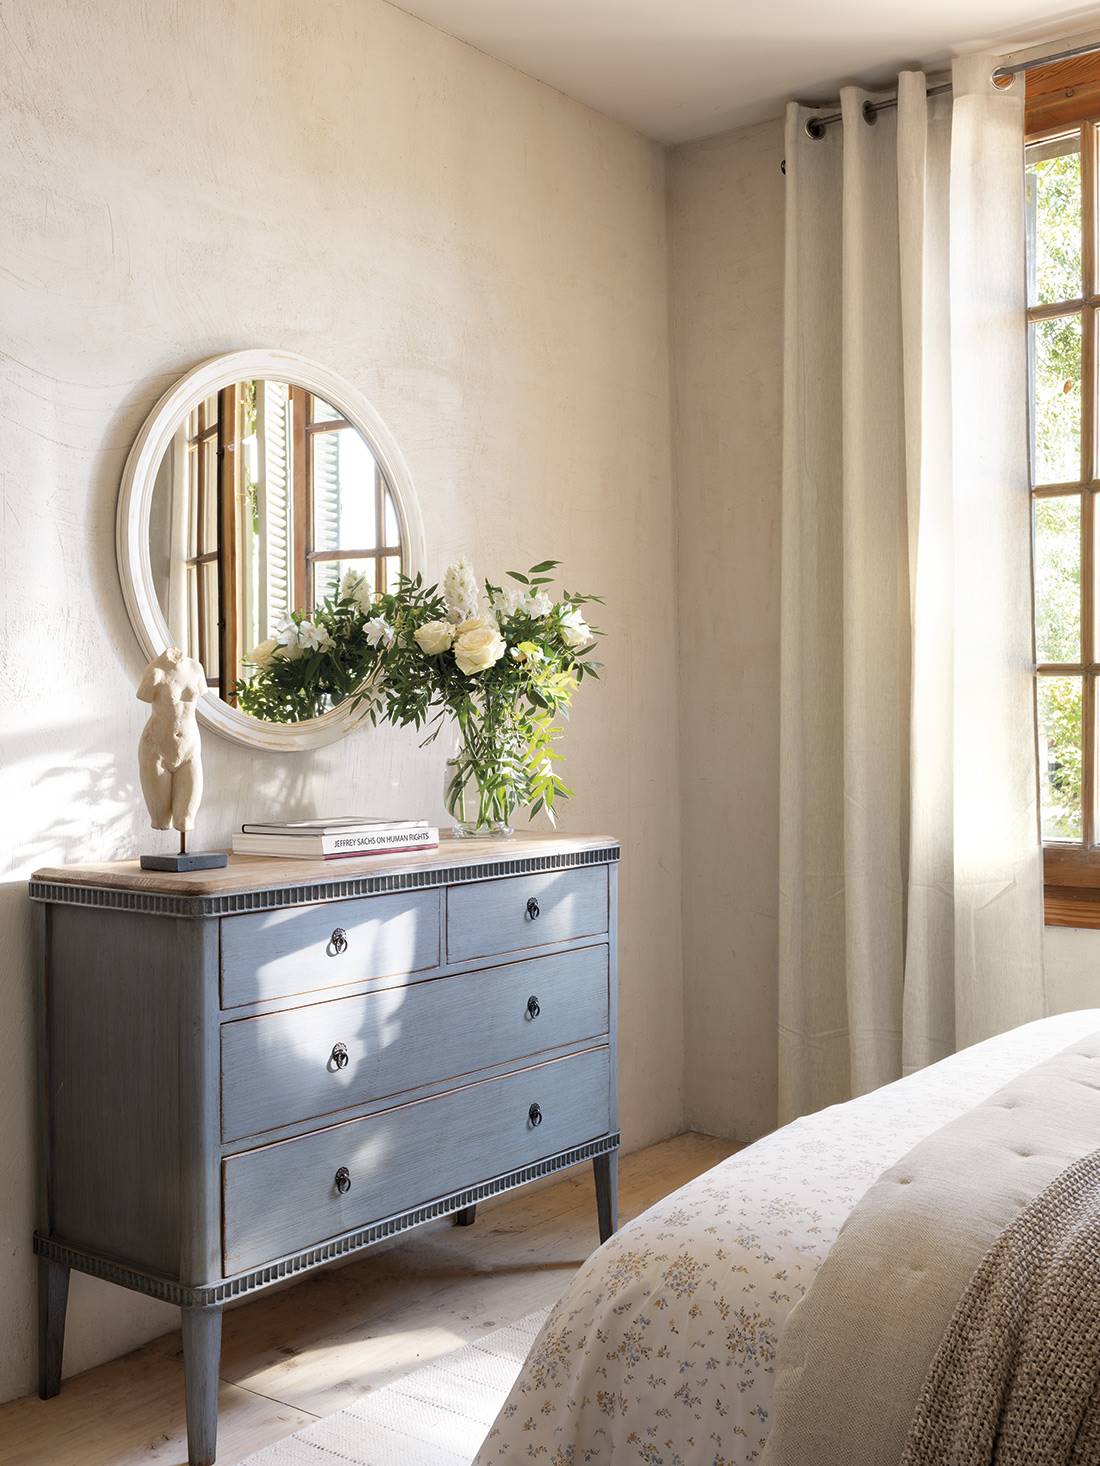  Dormitorio con cómoda con cajones azul, flores y espejo blanco redondo con moldura envejecida.